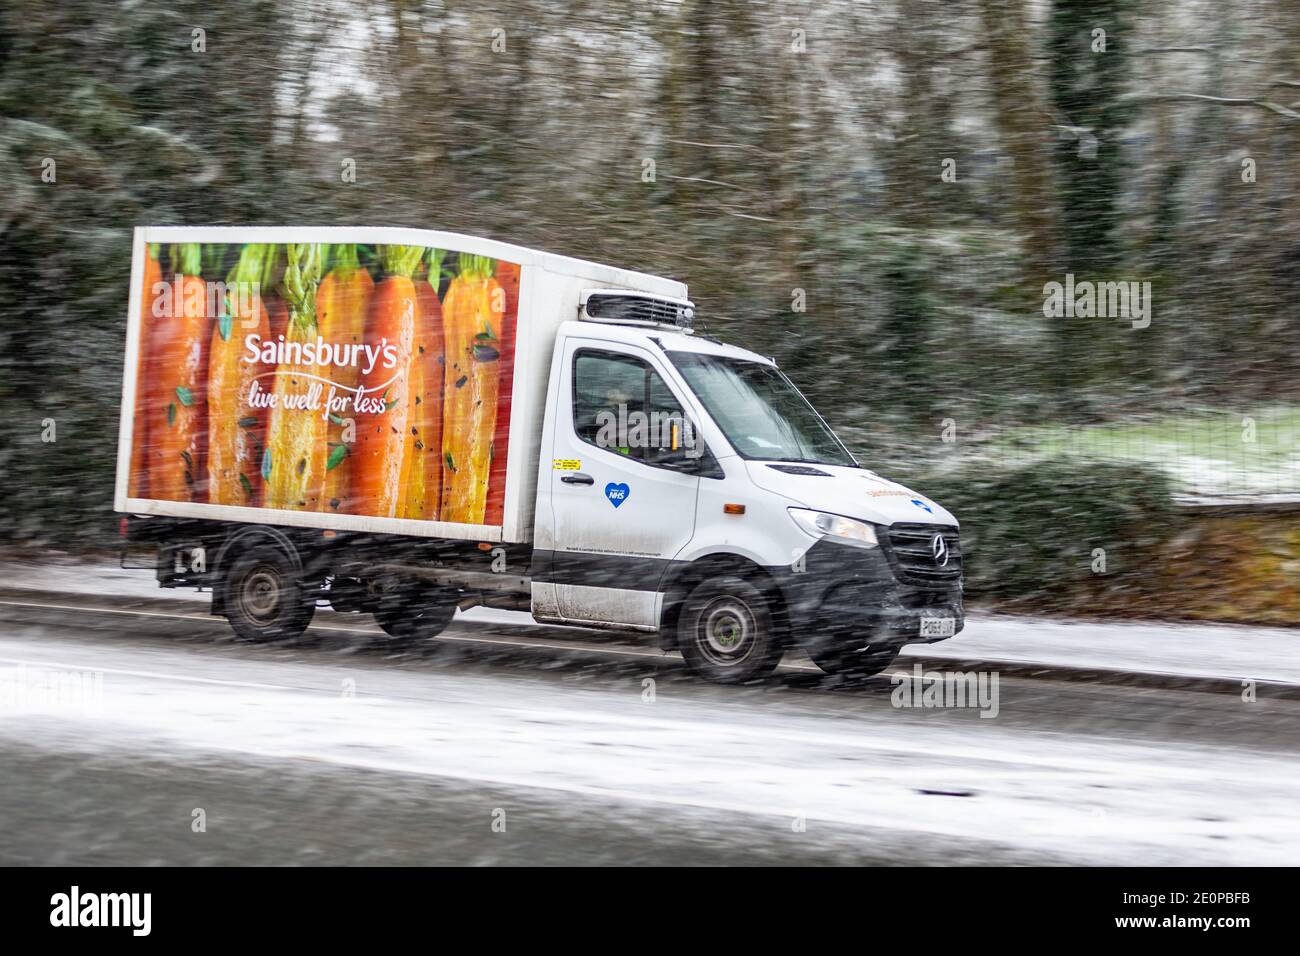 Une camionnette Sainsbury traverse la neige qui tombe, au Royaume-Uni Banque D'Images